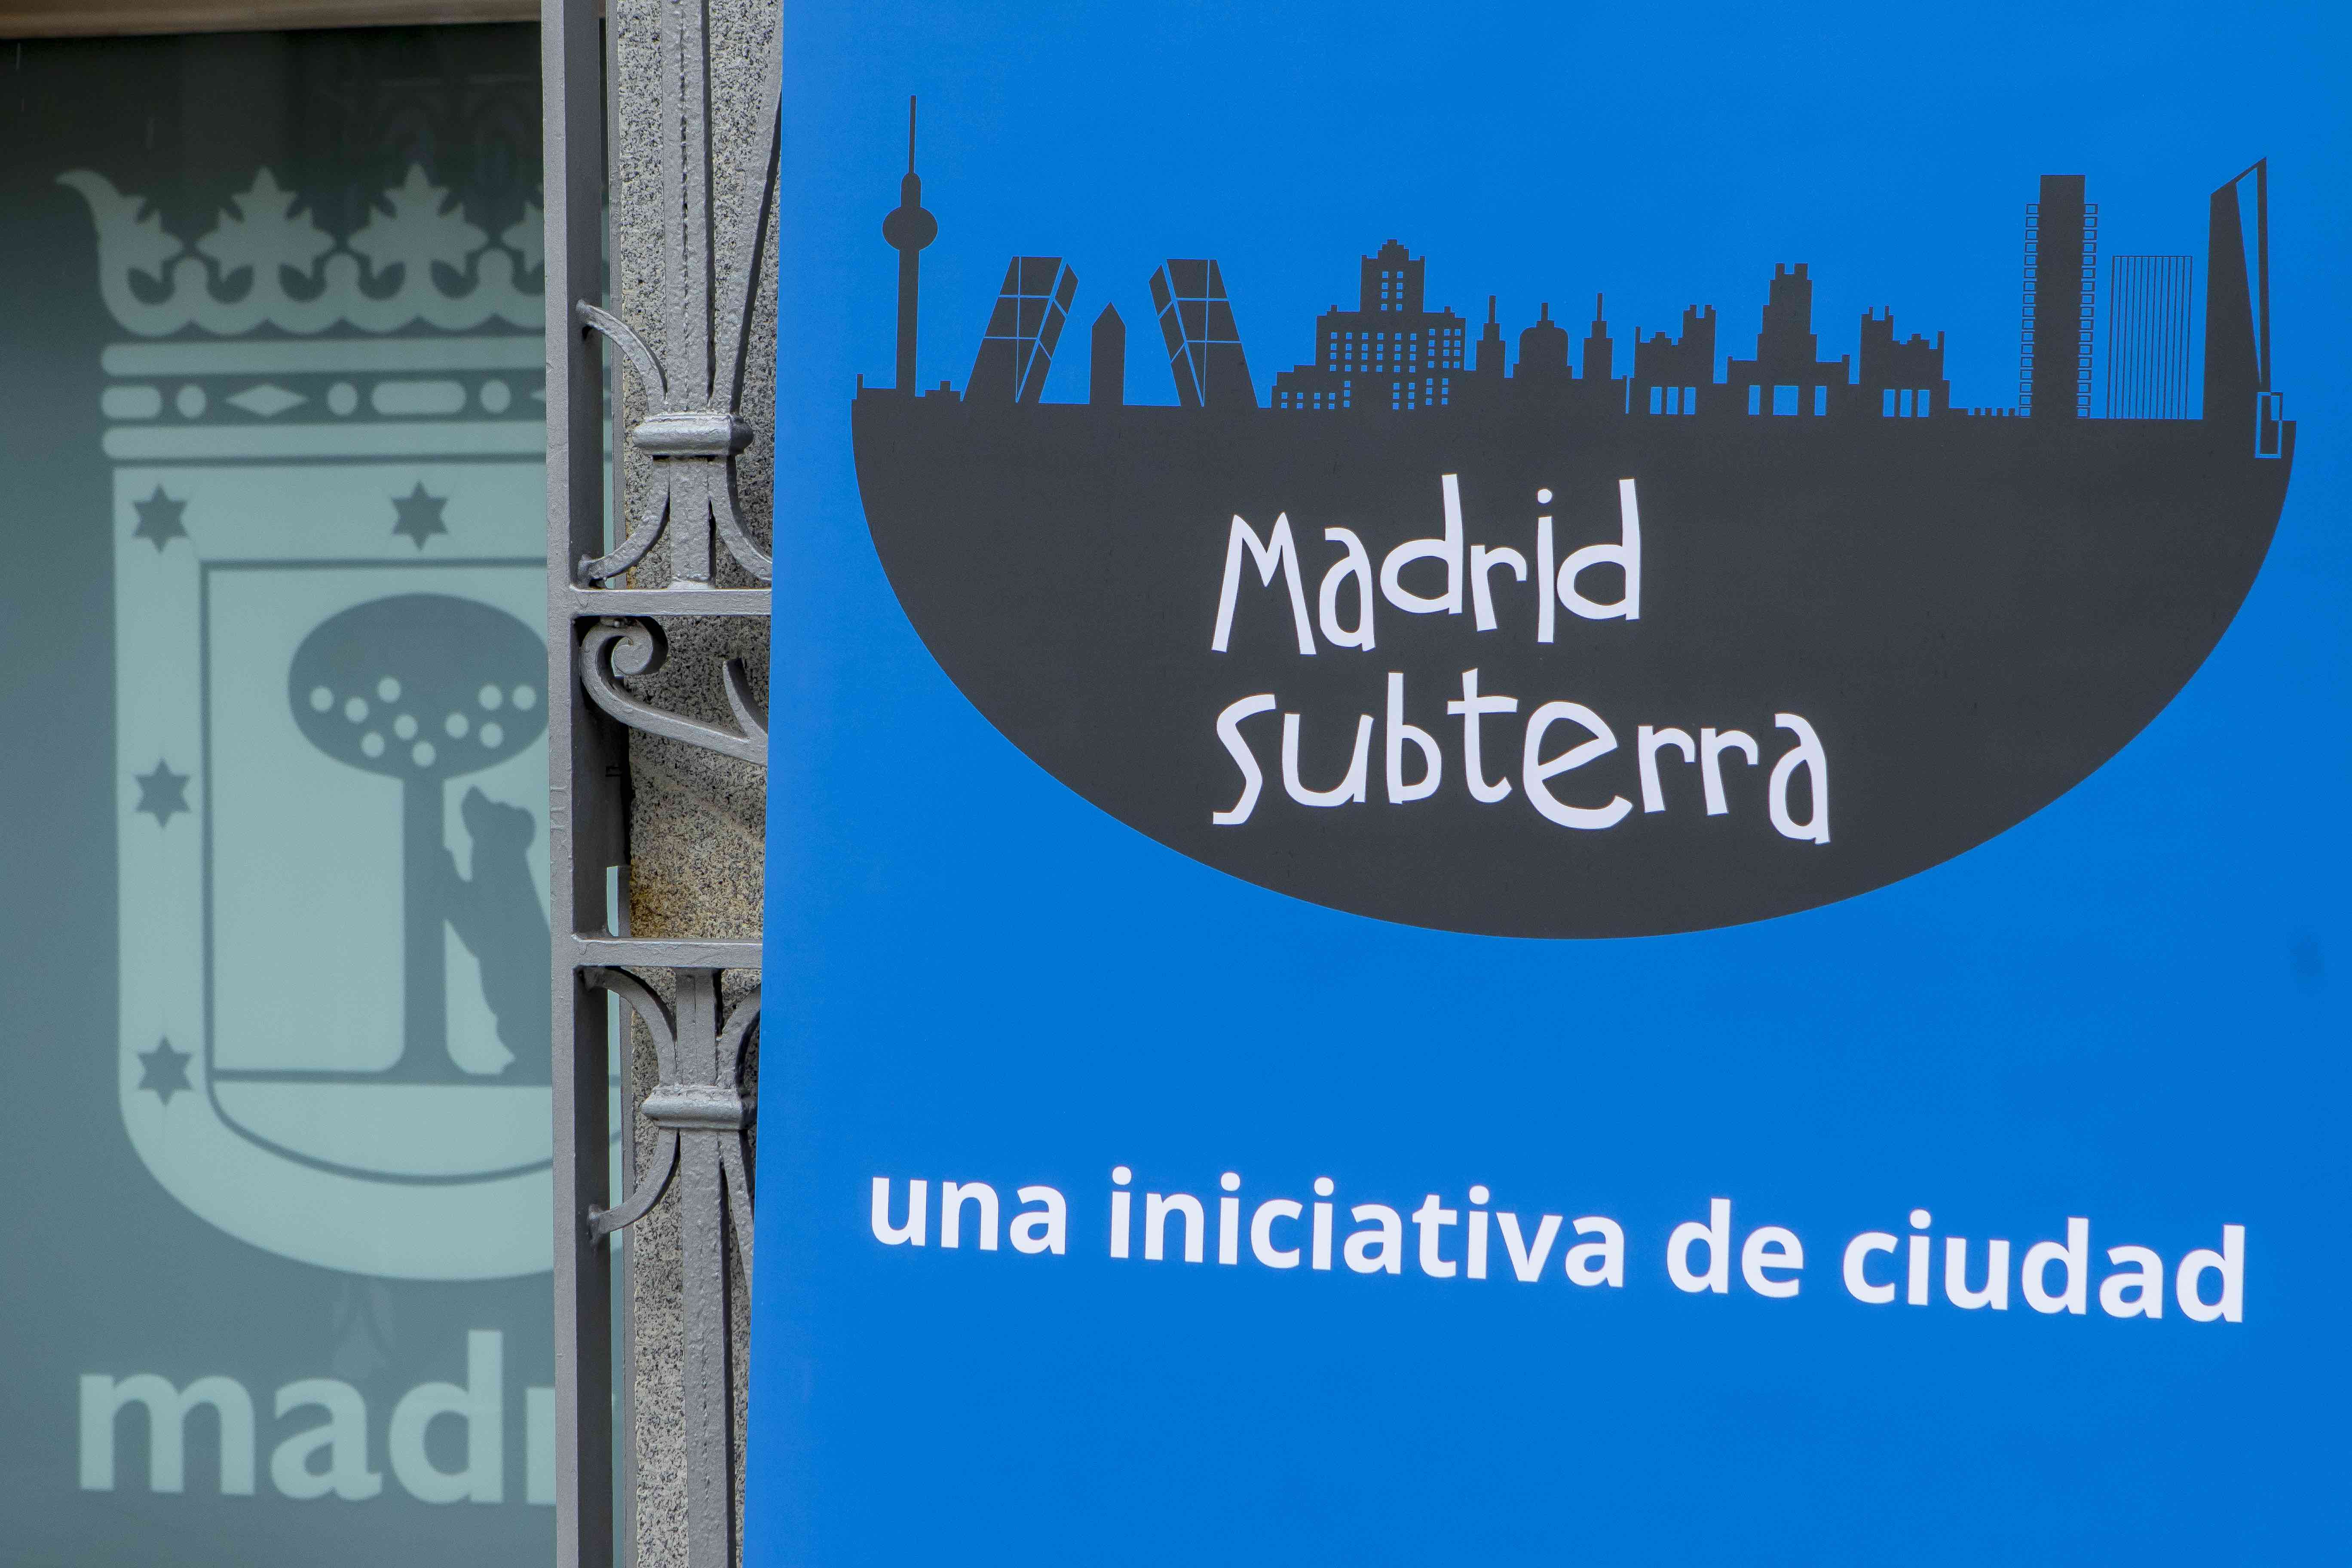 Madrid Subterra dos años explorando las energías del subsuelo